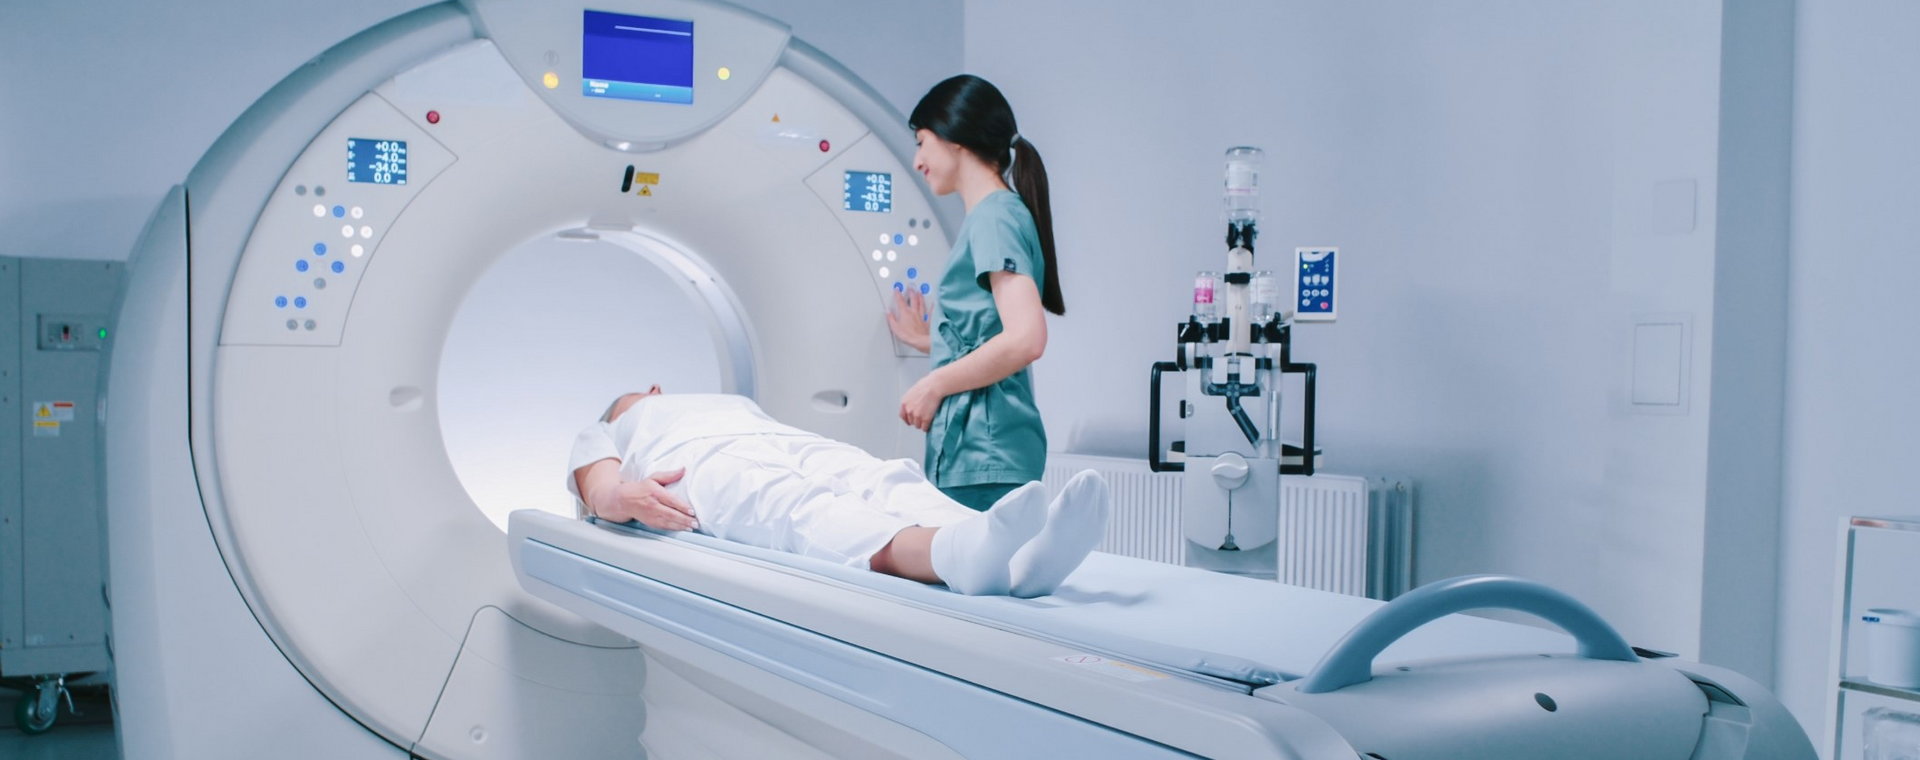 Badanie MRI jako benefit dla pracownika